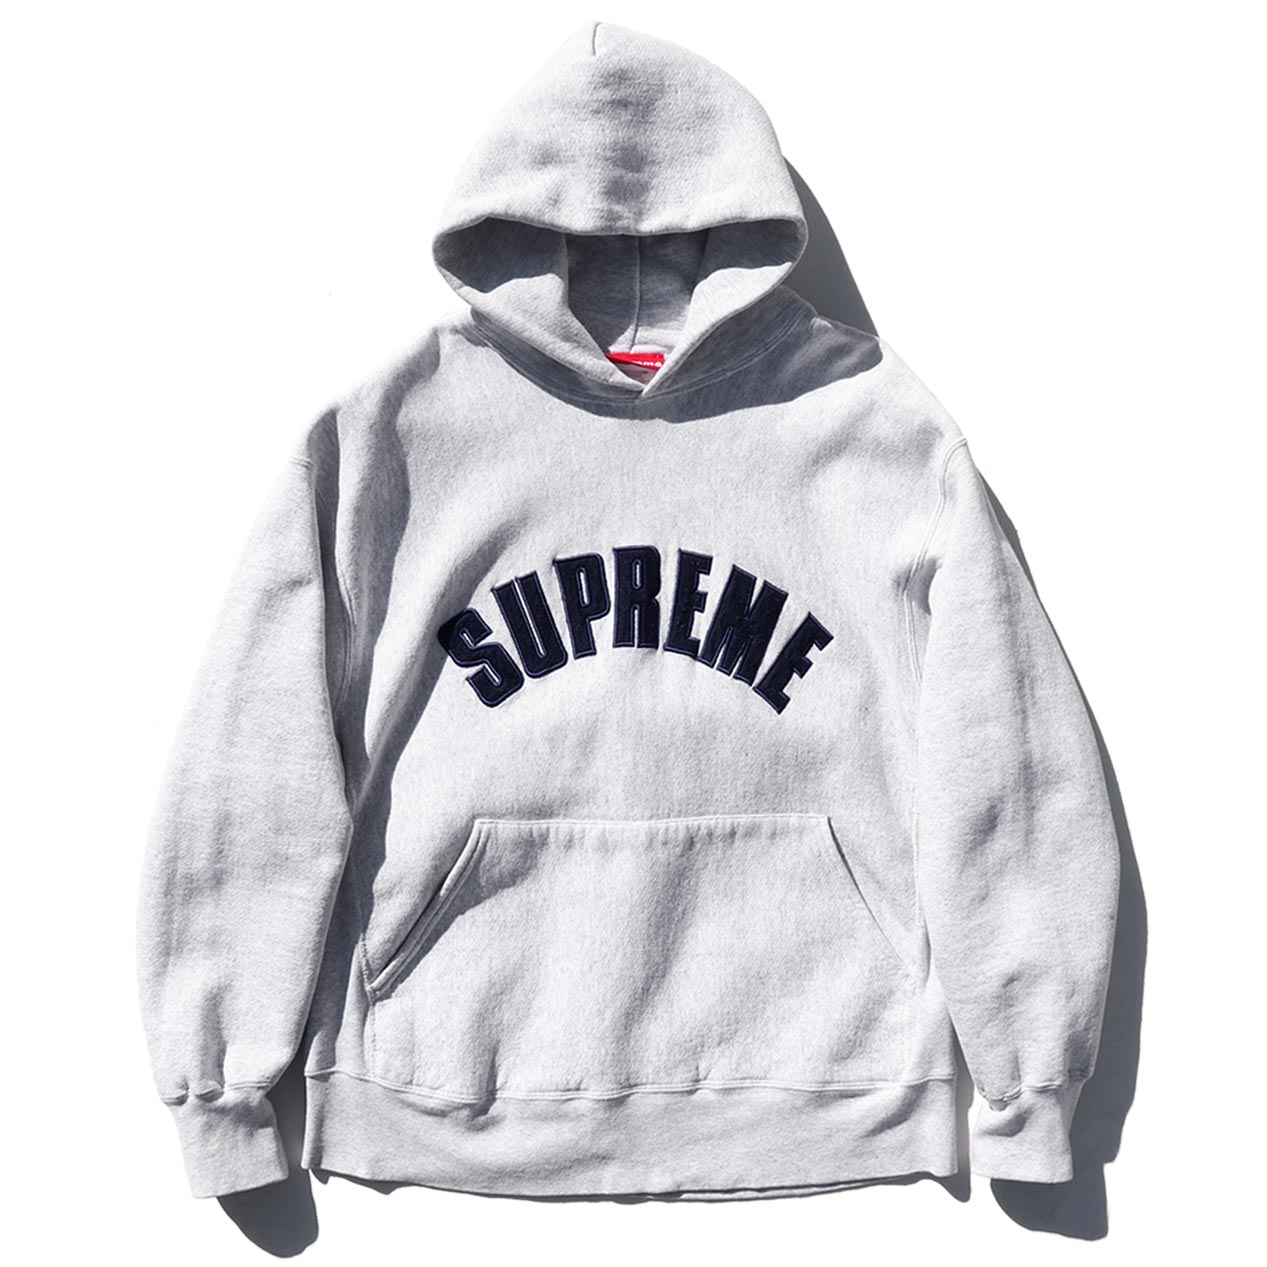 着丈65㎝90’s supreme logo hoodie made in USA